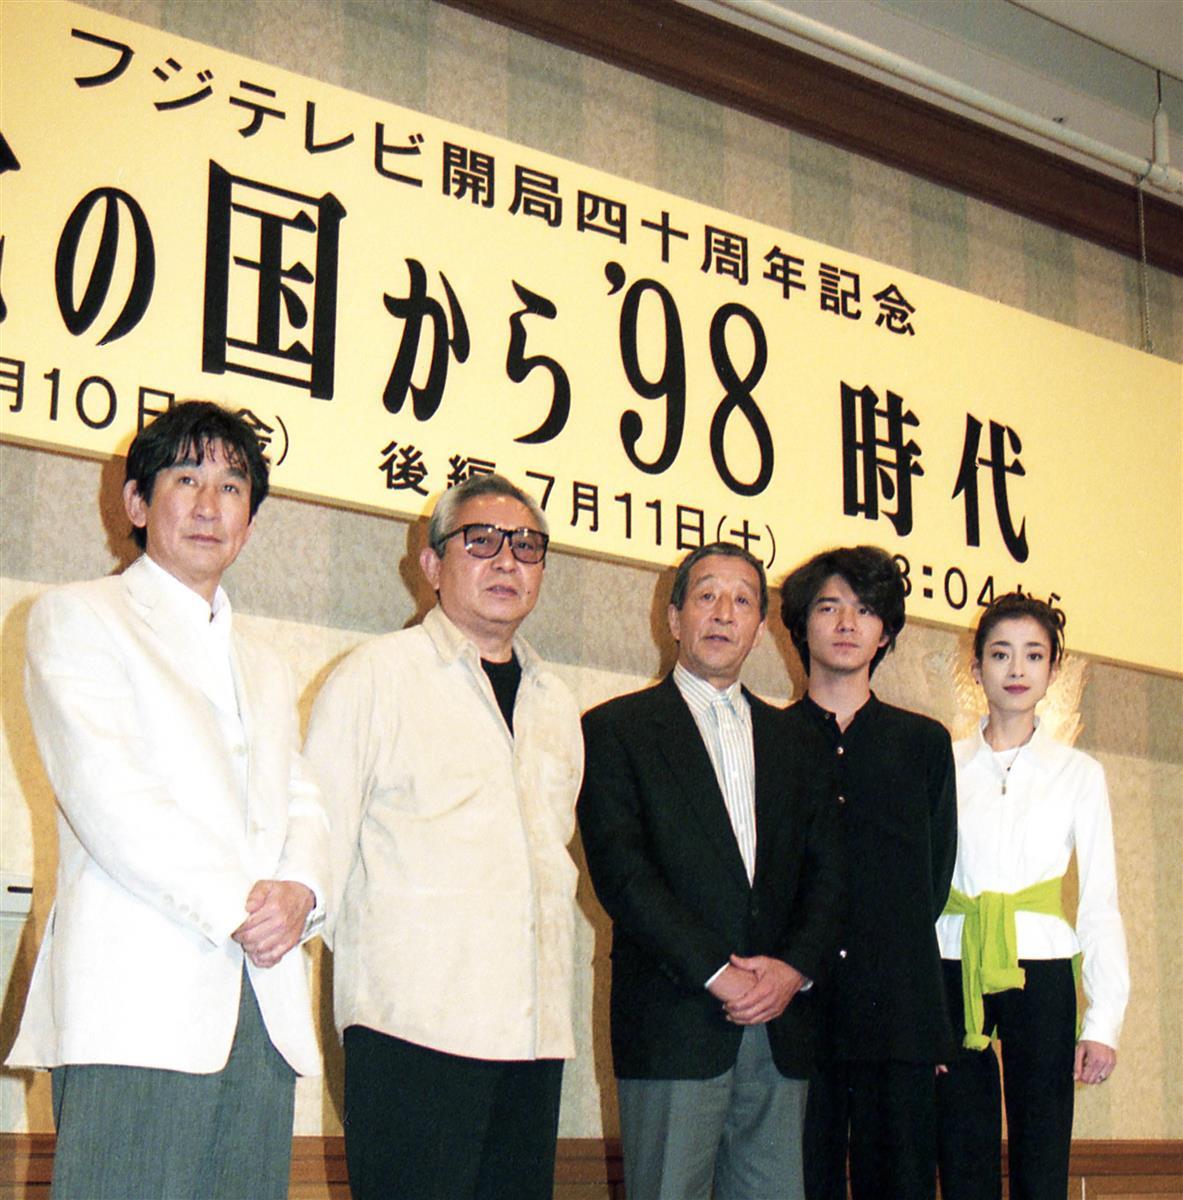 脚本家の倉本聡さん、田中邦衛さん悼む「貴重な俳優だった」 - 産経 